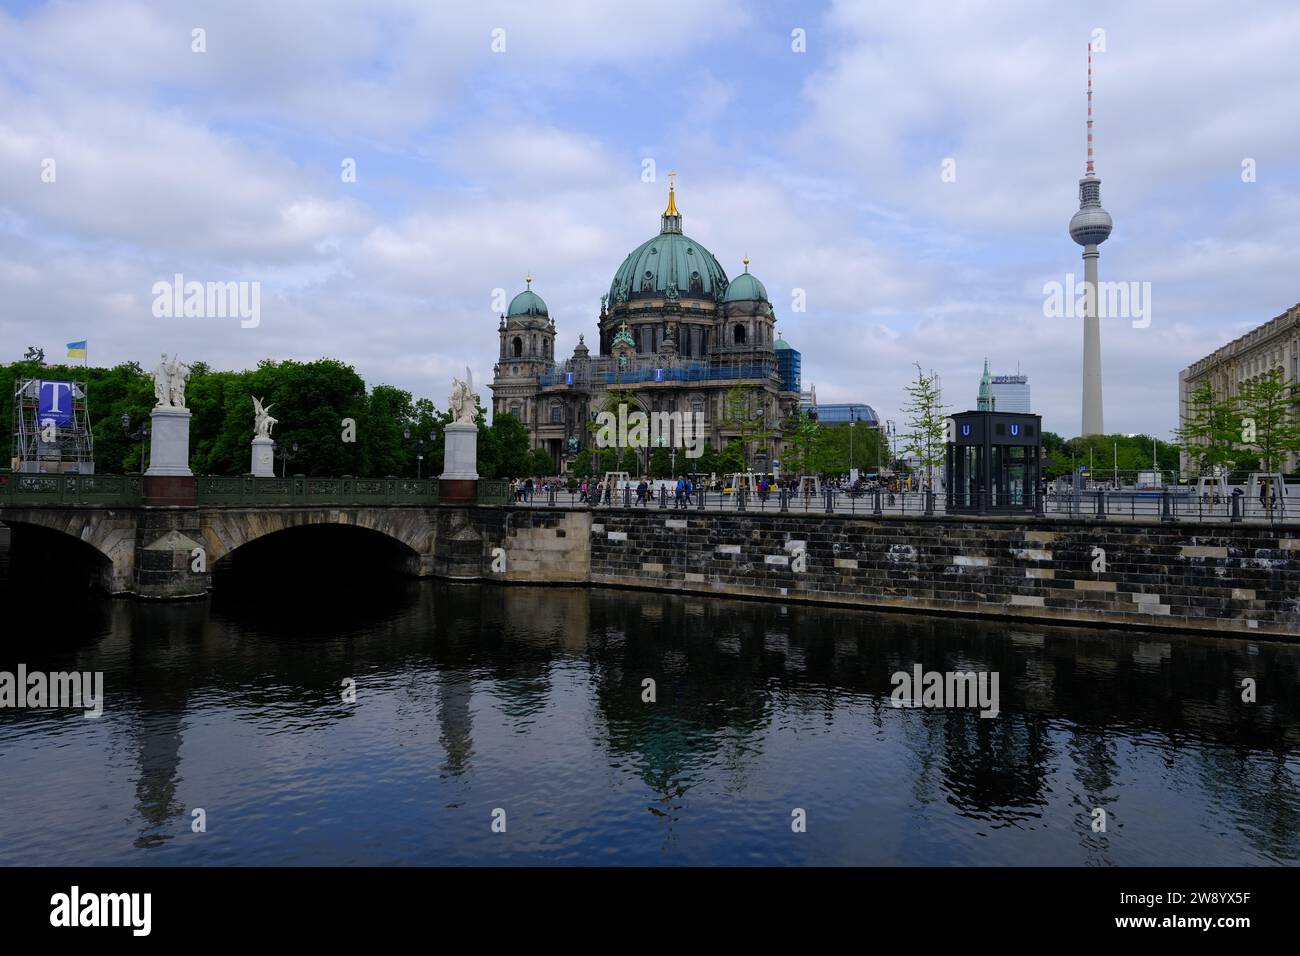 Berlin Allemagne - Tour de télévision et cathédrale de Berlin Banque D'Images